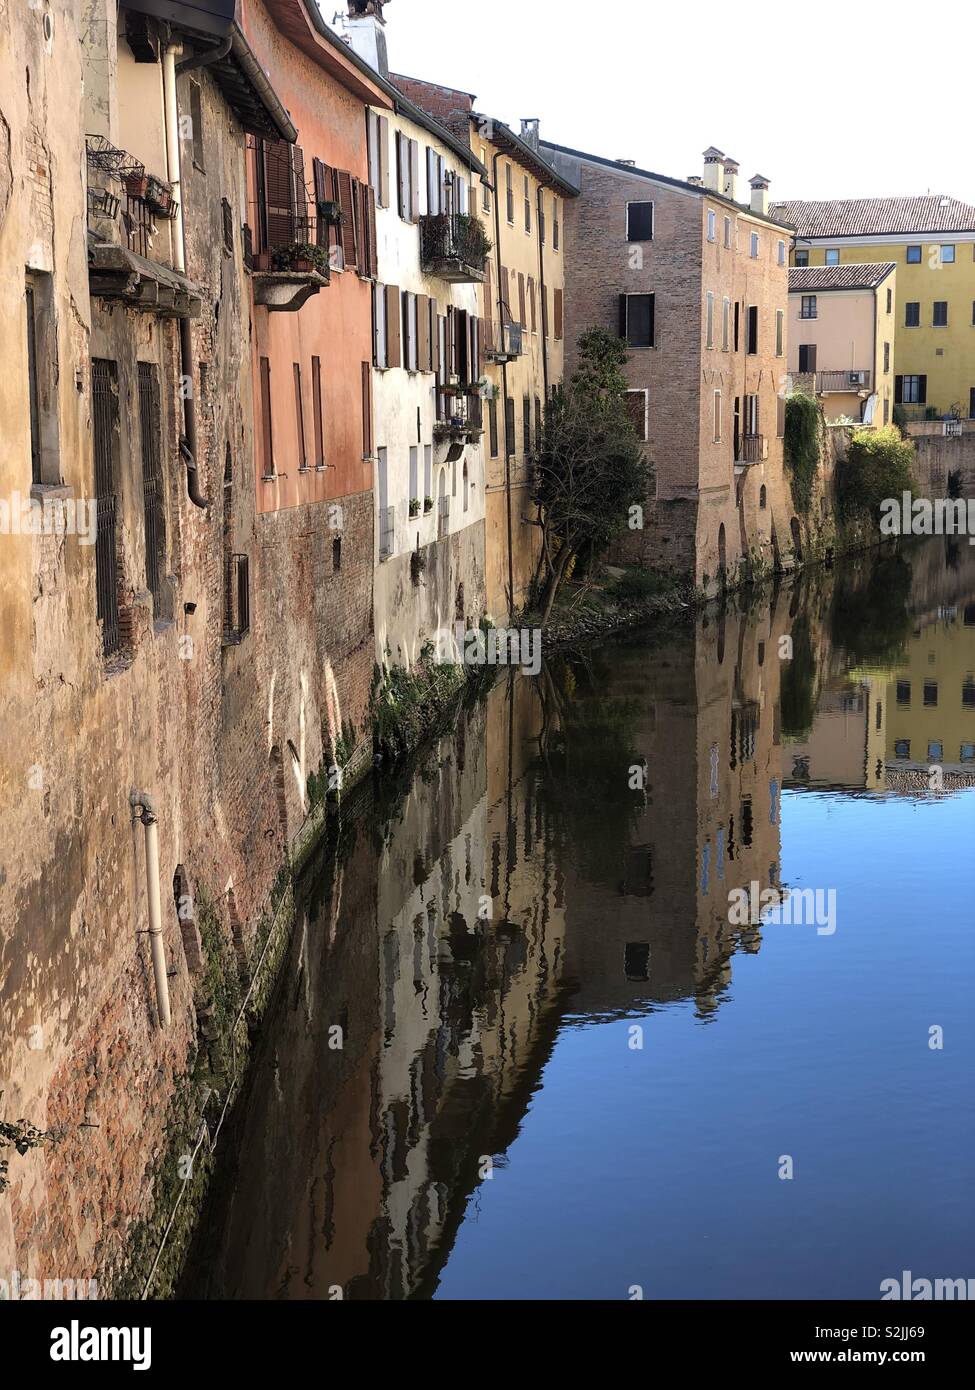 Houses on a canal of Mantova, Lombardia region, Italy Stock Photo